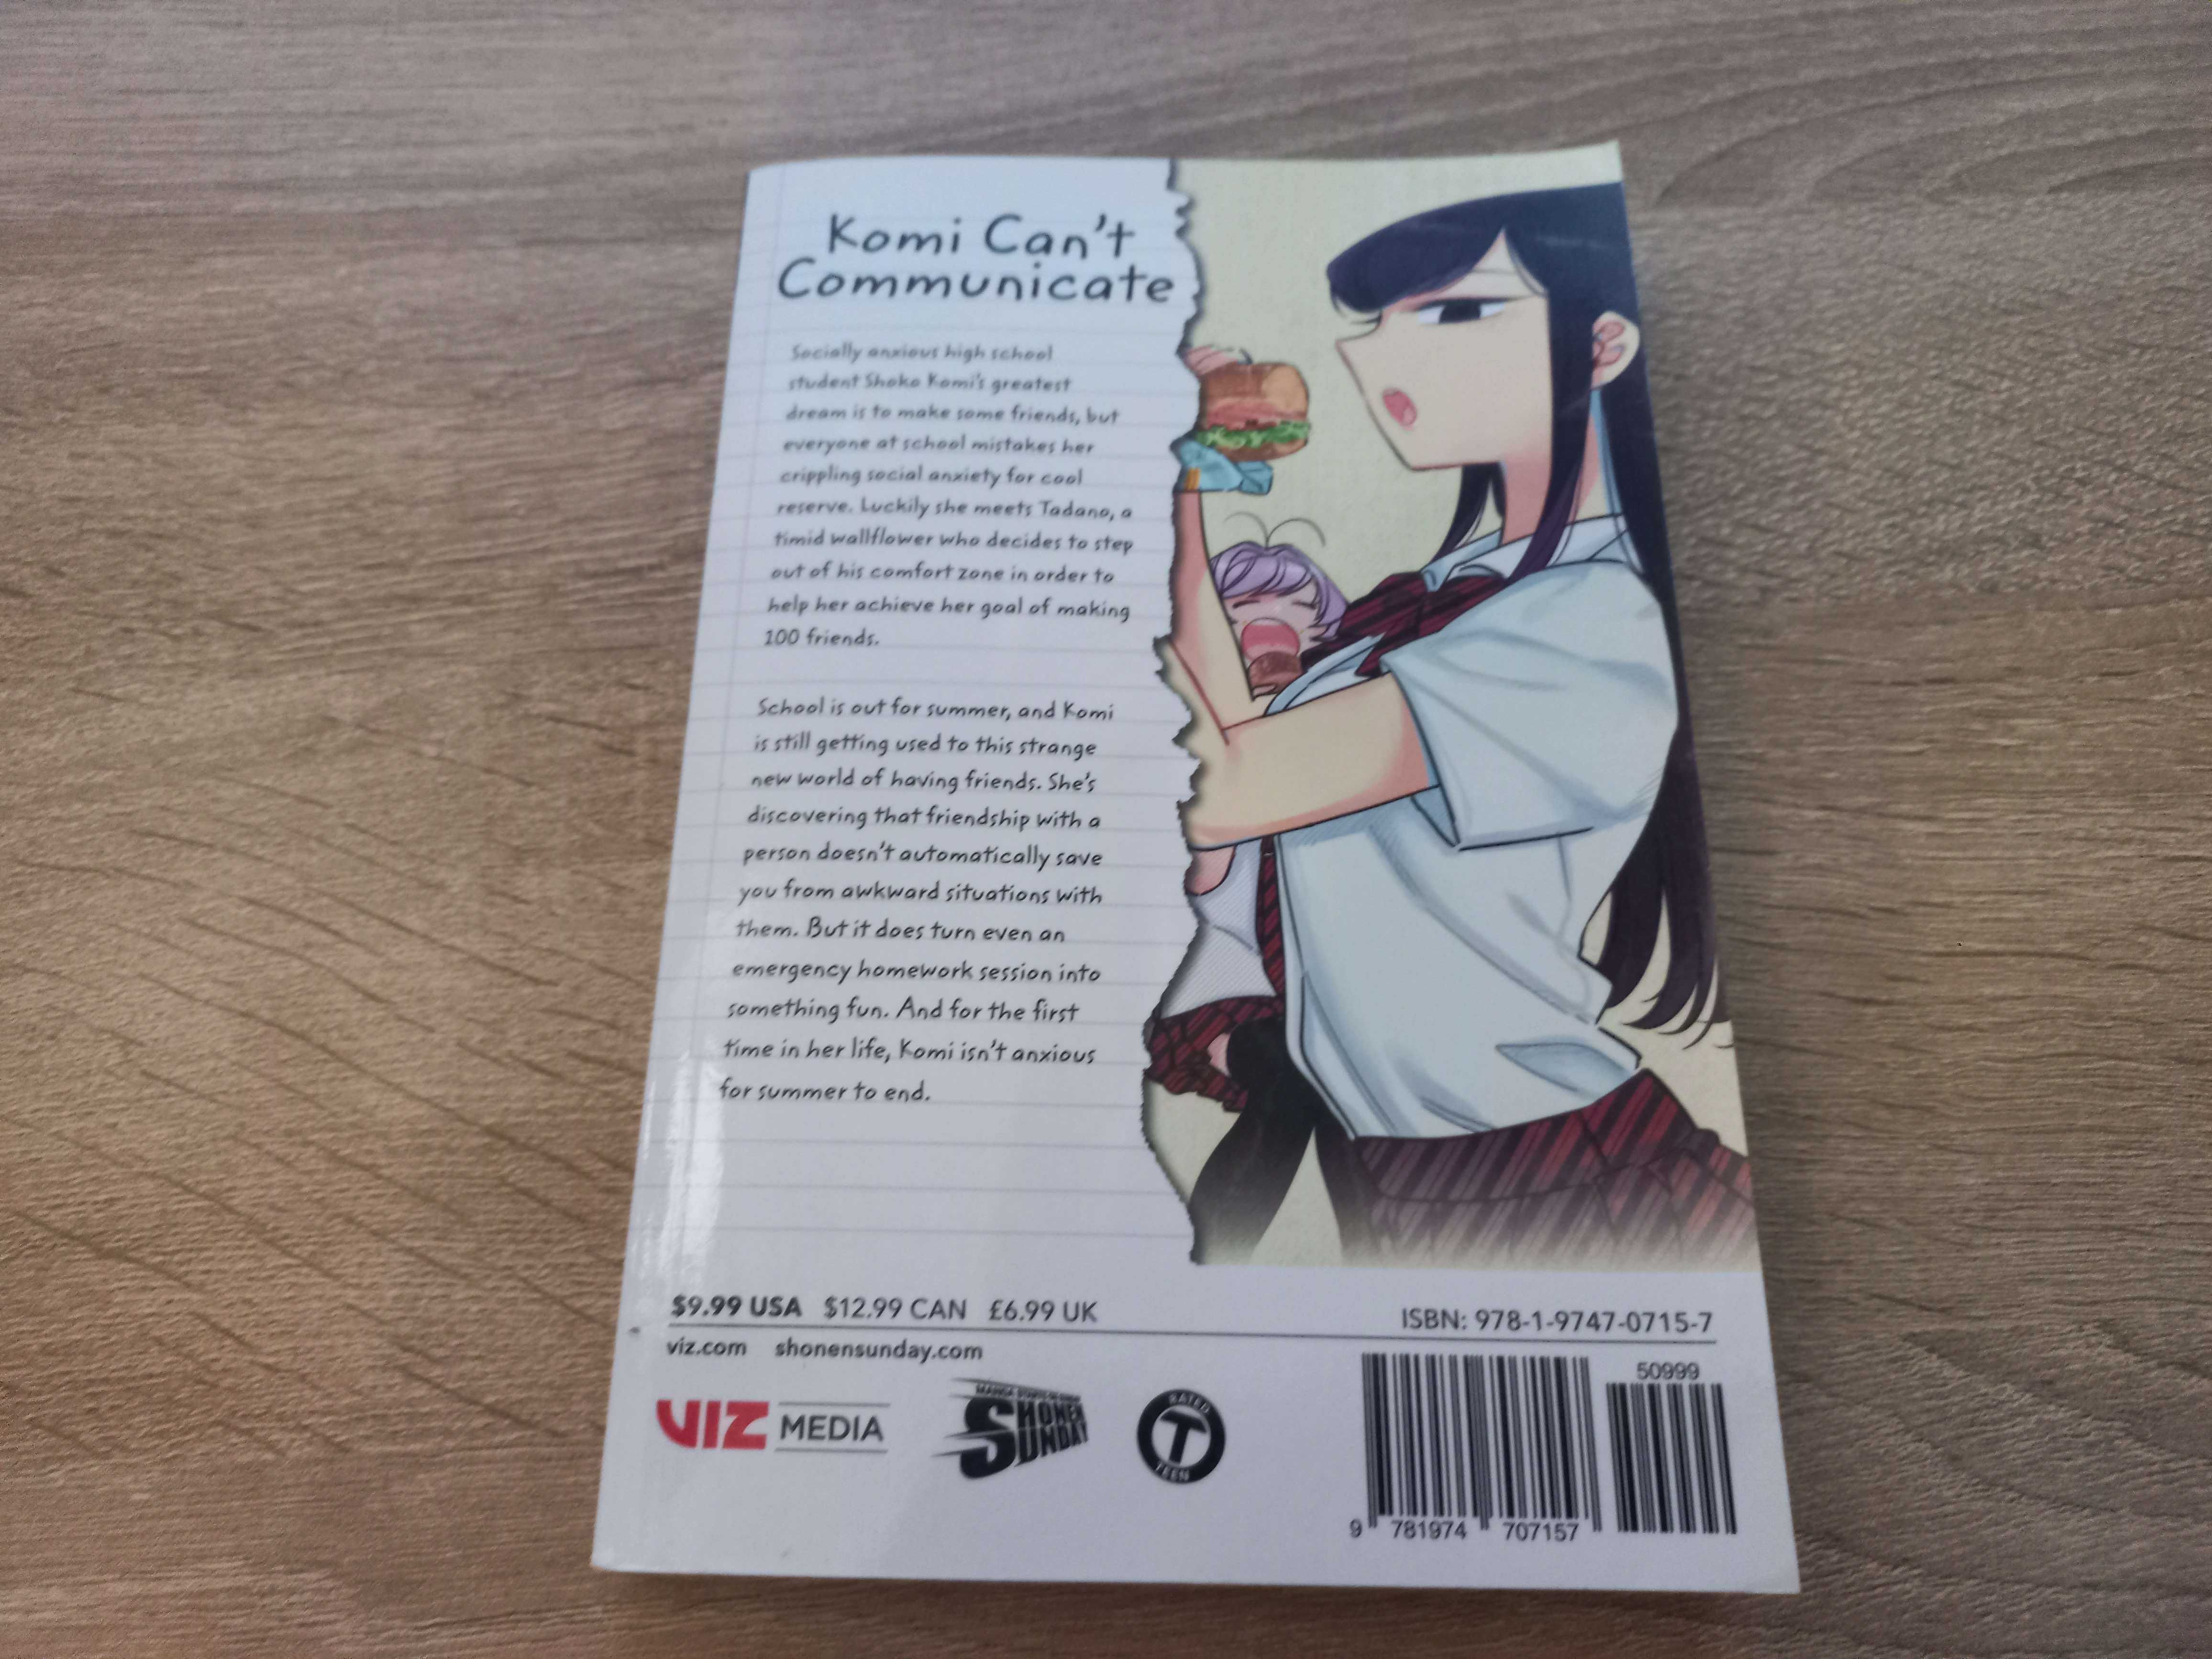 [Manga] Komi Can't Communicate, Vol. 4 (Viz) (EN)